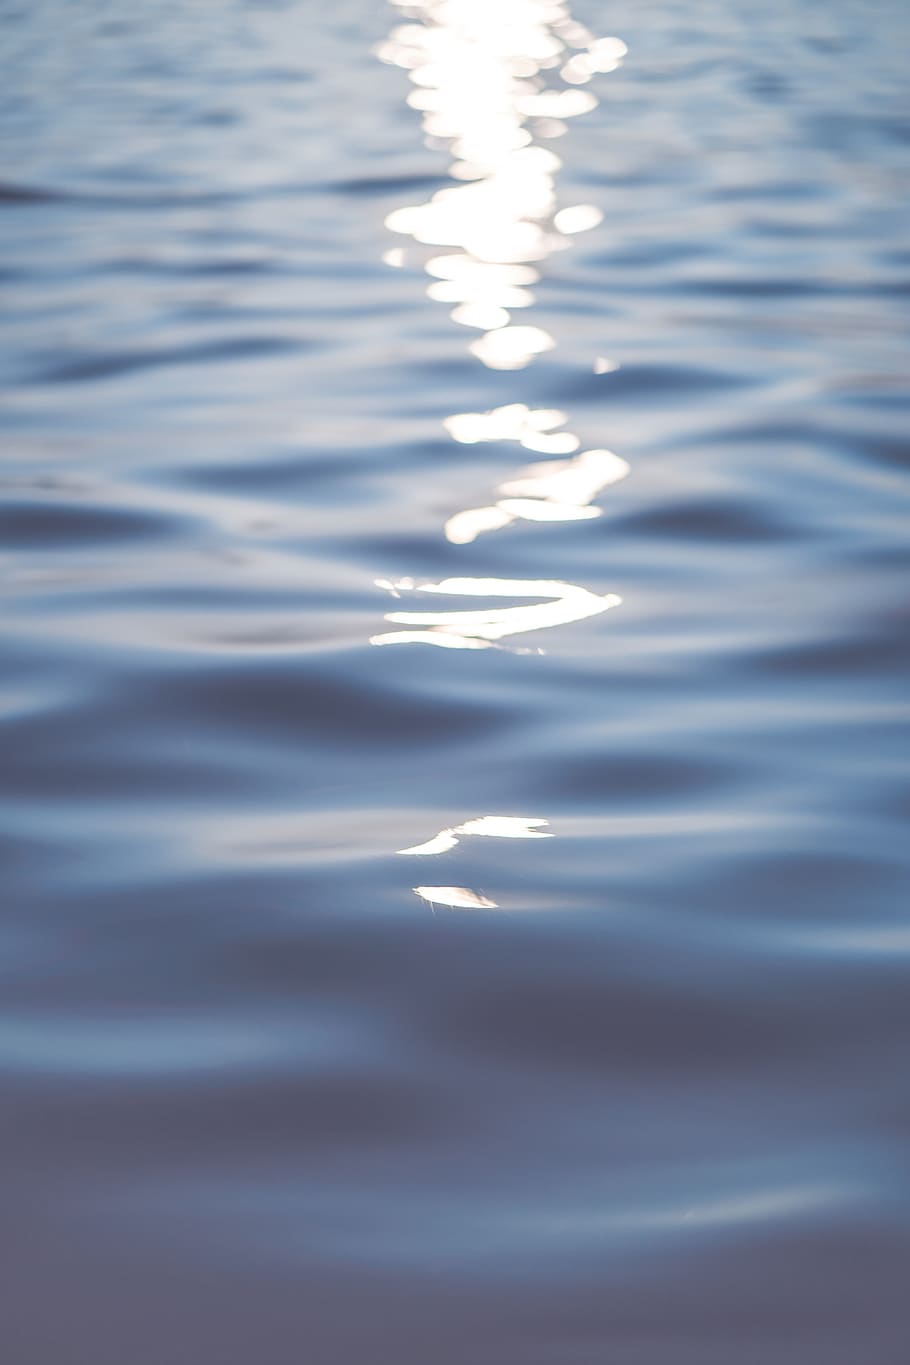 agua, sol, reflejo, plano, frío, fondo de pantalla de bloqueo, frente al mar, sin gente, reflexión, tranquilidad